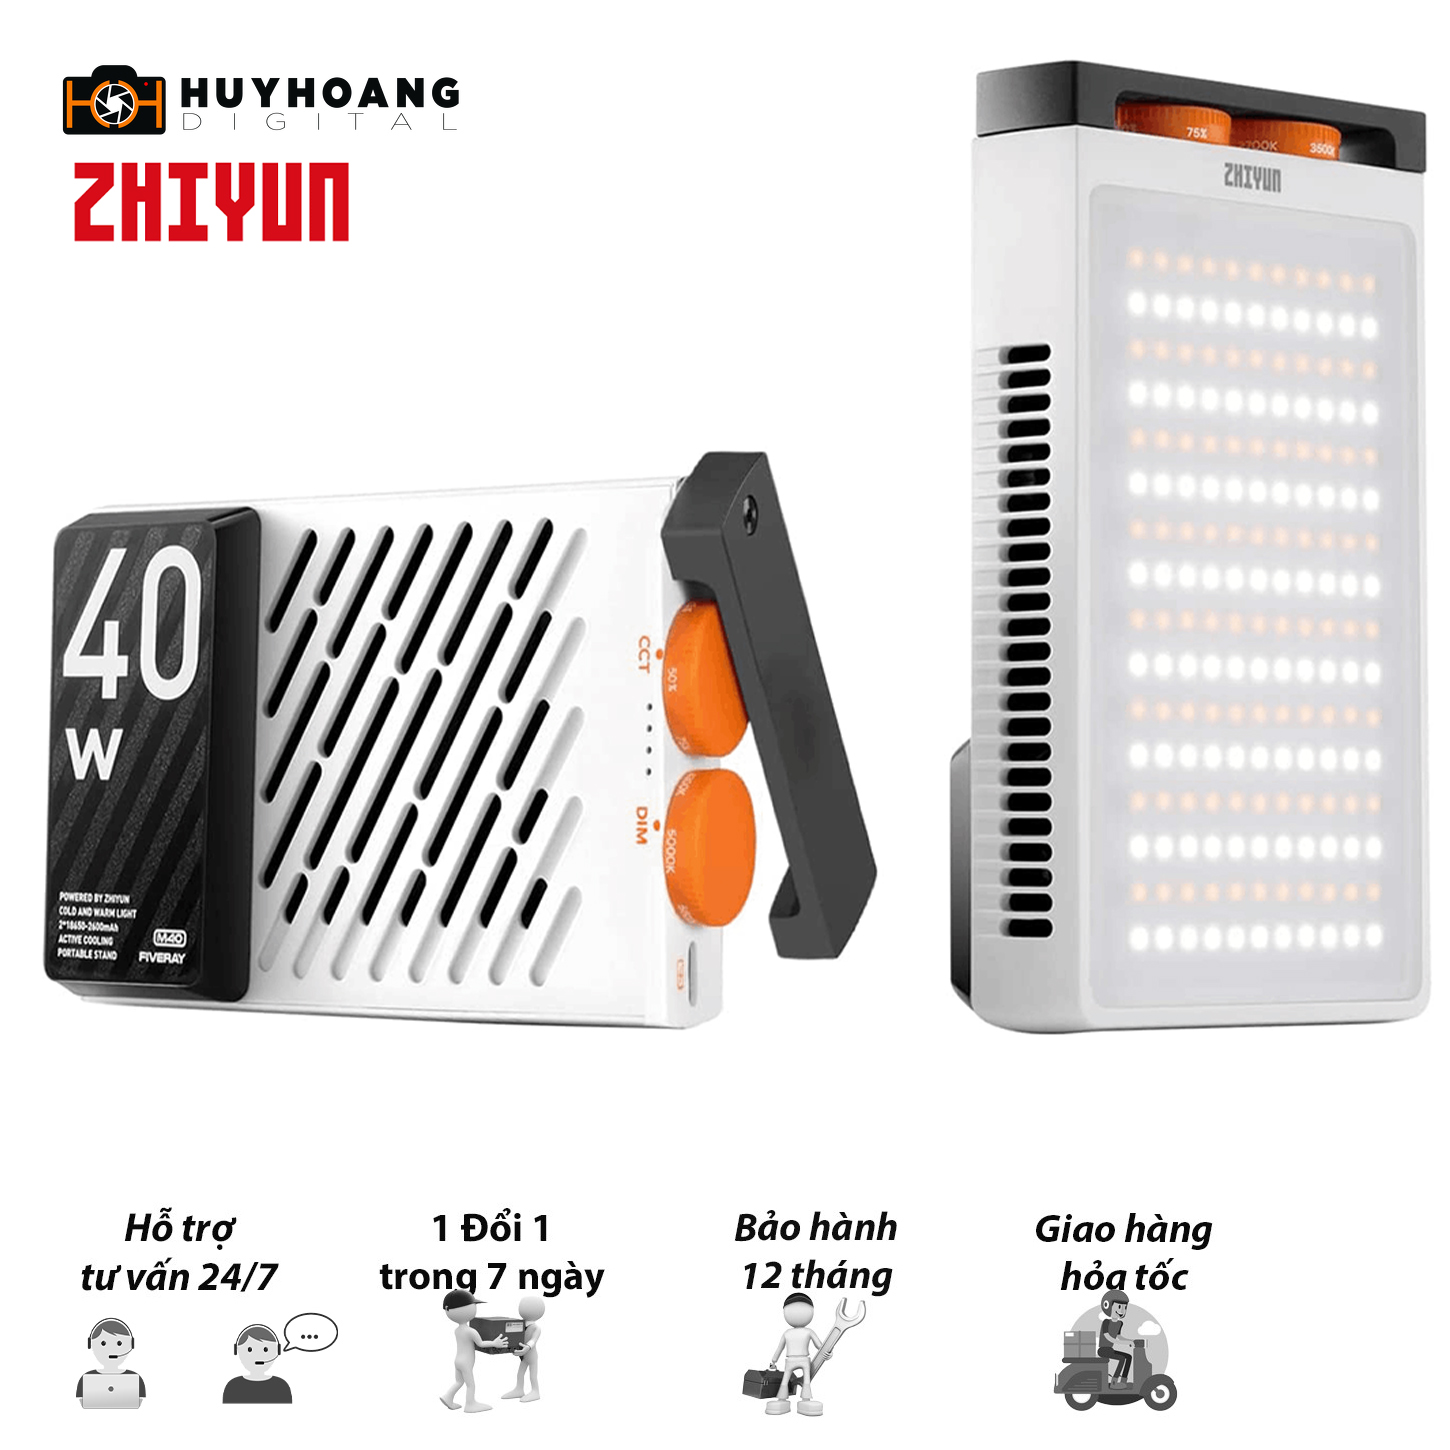 Đèn LED Zhiyun Fiveray M40 Bicolor - Hàng chính hãng